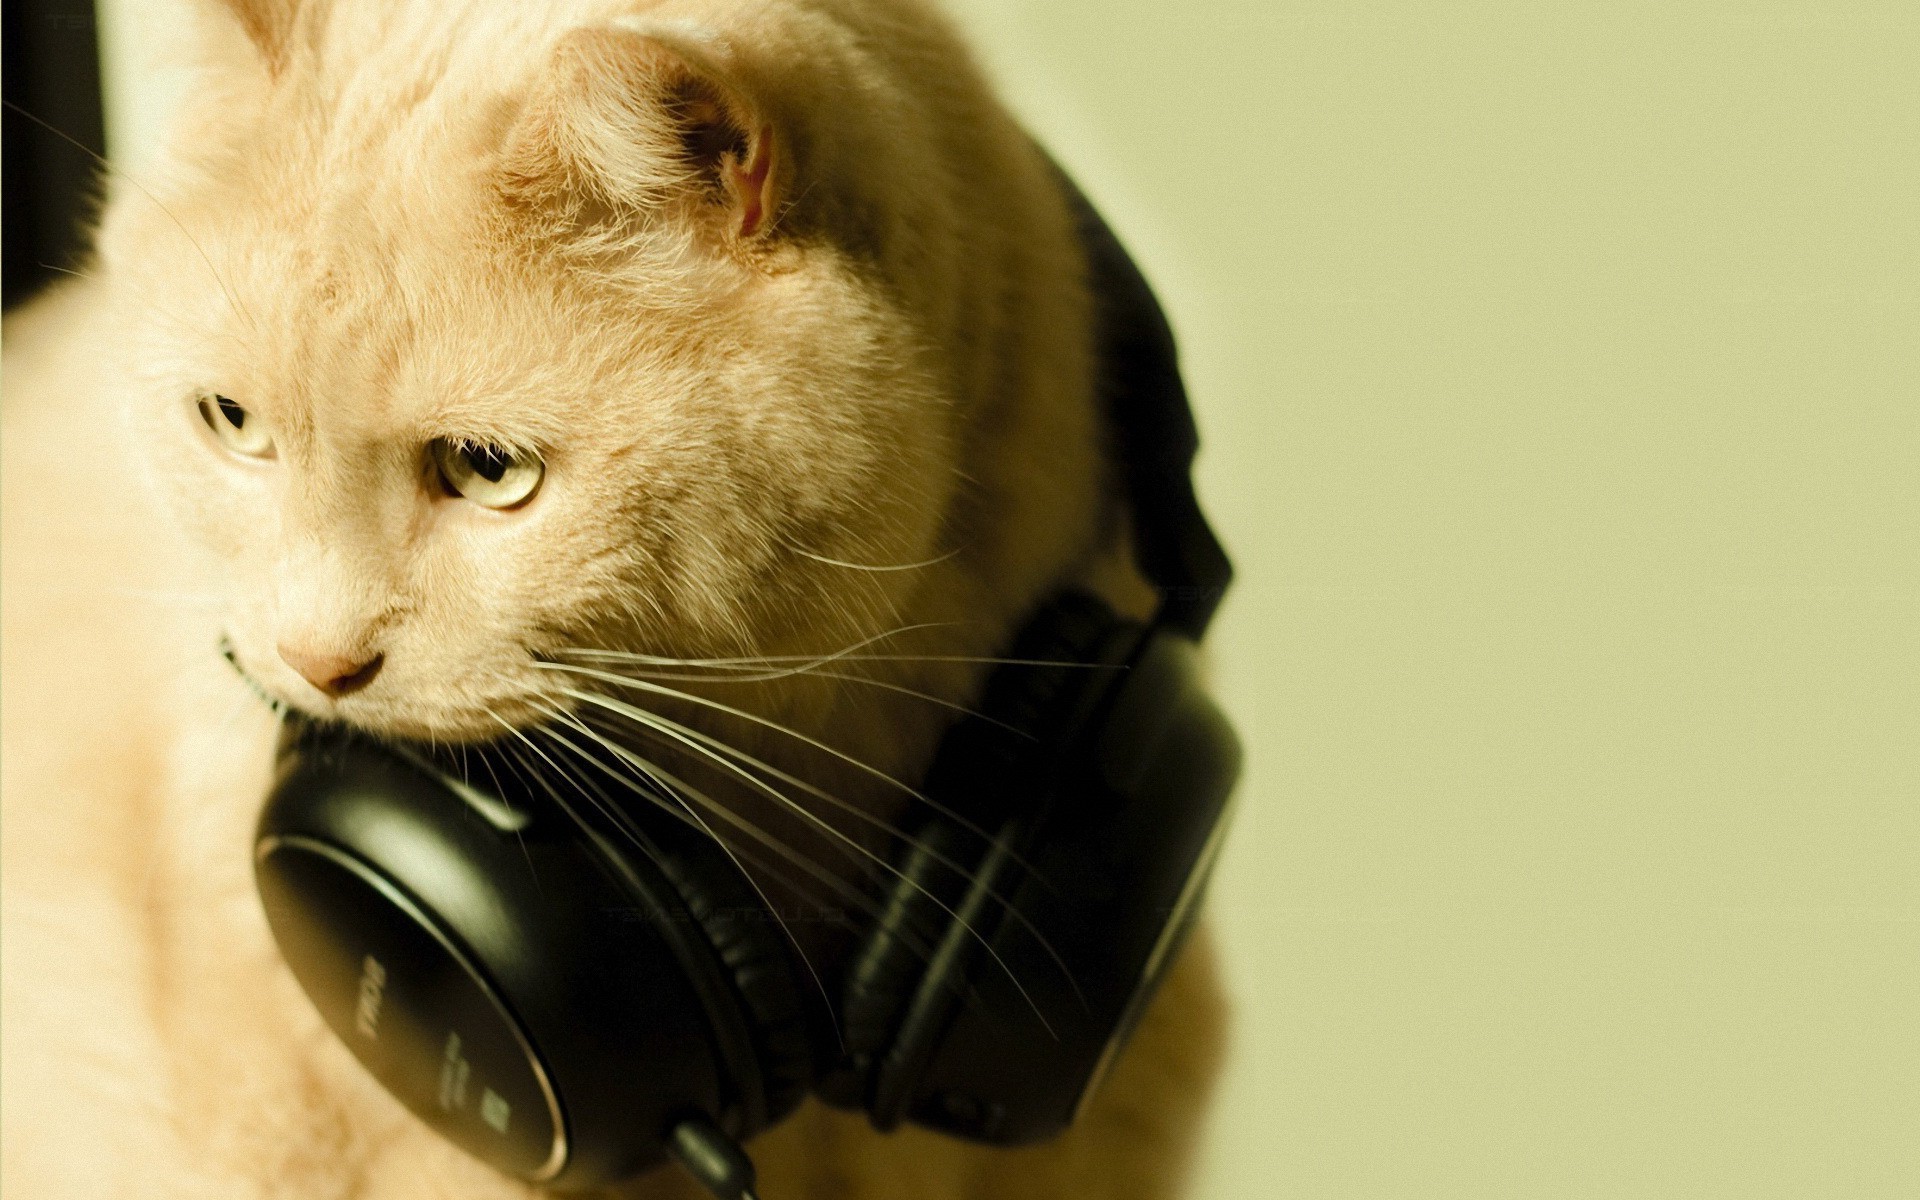 cat headphones Wallpapers HD / Desktop and Mobile Backgrounds